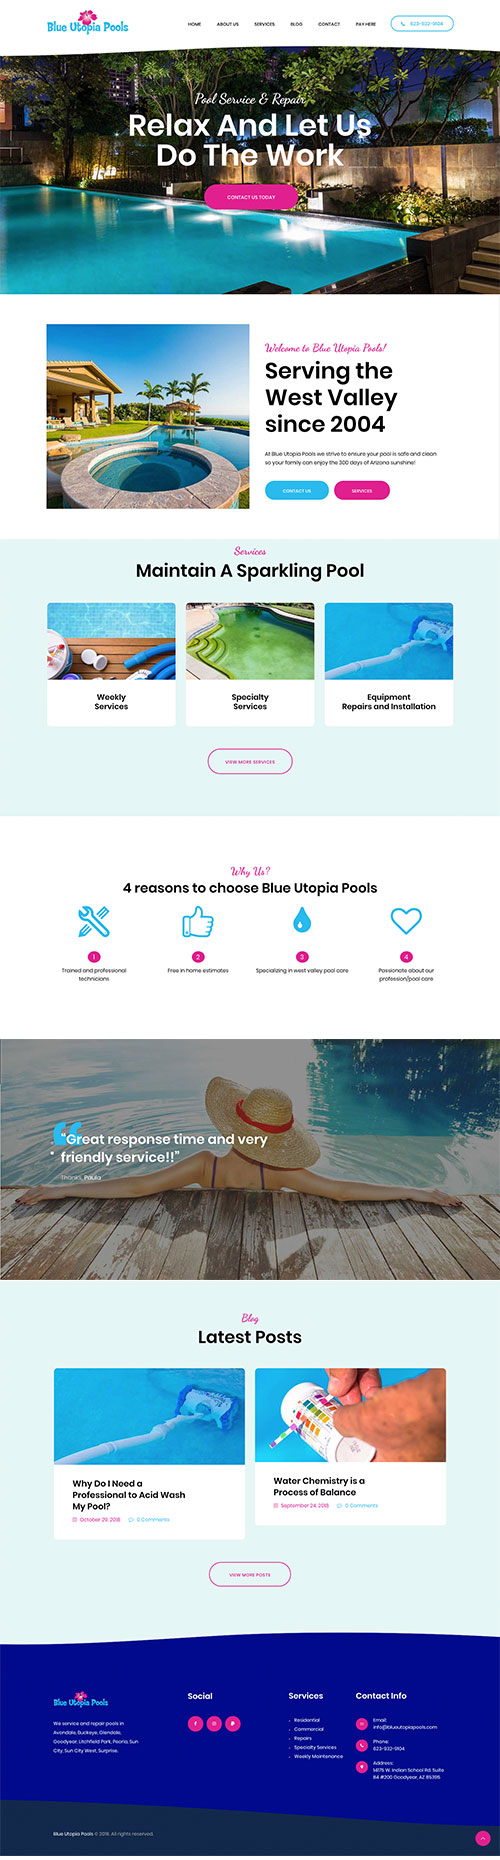 Pool servicing and repair website design